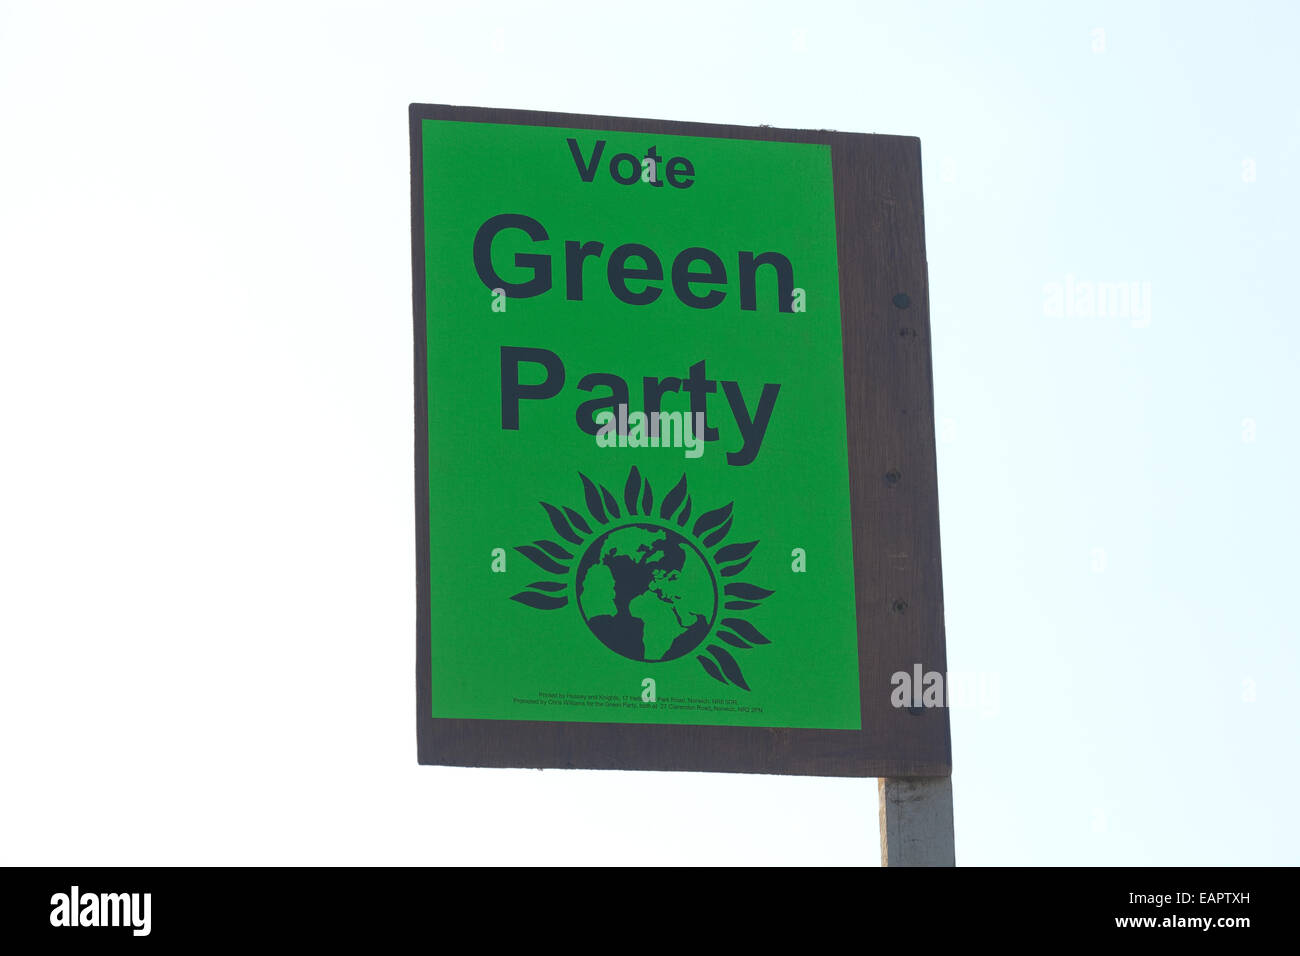 En bordure de la thésaurisation de la publicité du Parti vert dans un jardin de Norwich. Affiche pour les élections locales. Banque D'Images